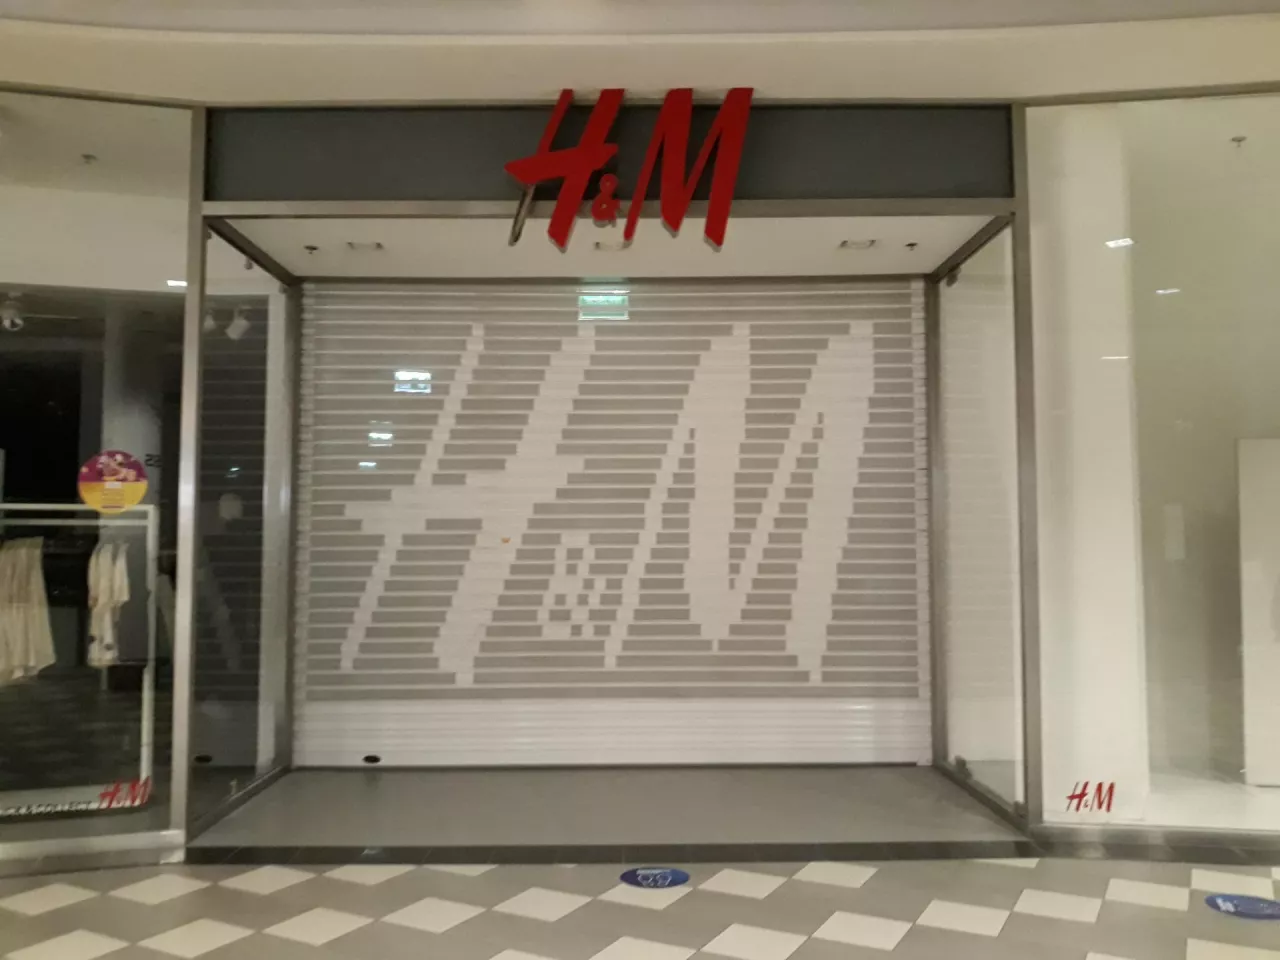 Zamknięty salon odzieżowy marki H&amp;M z powodu obostrzeń związanych z pandemią COVID-19 (wiadomoscihandlowe.pl/MG)